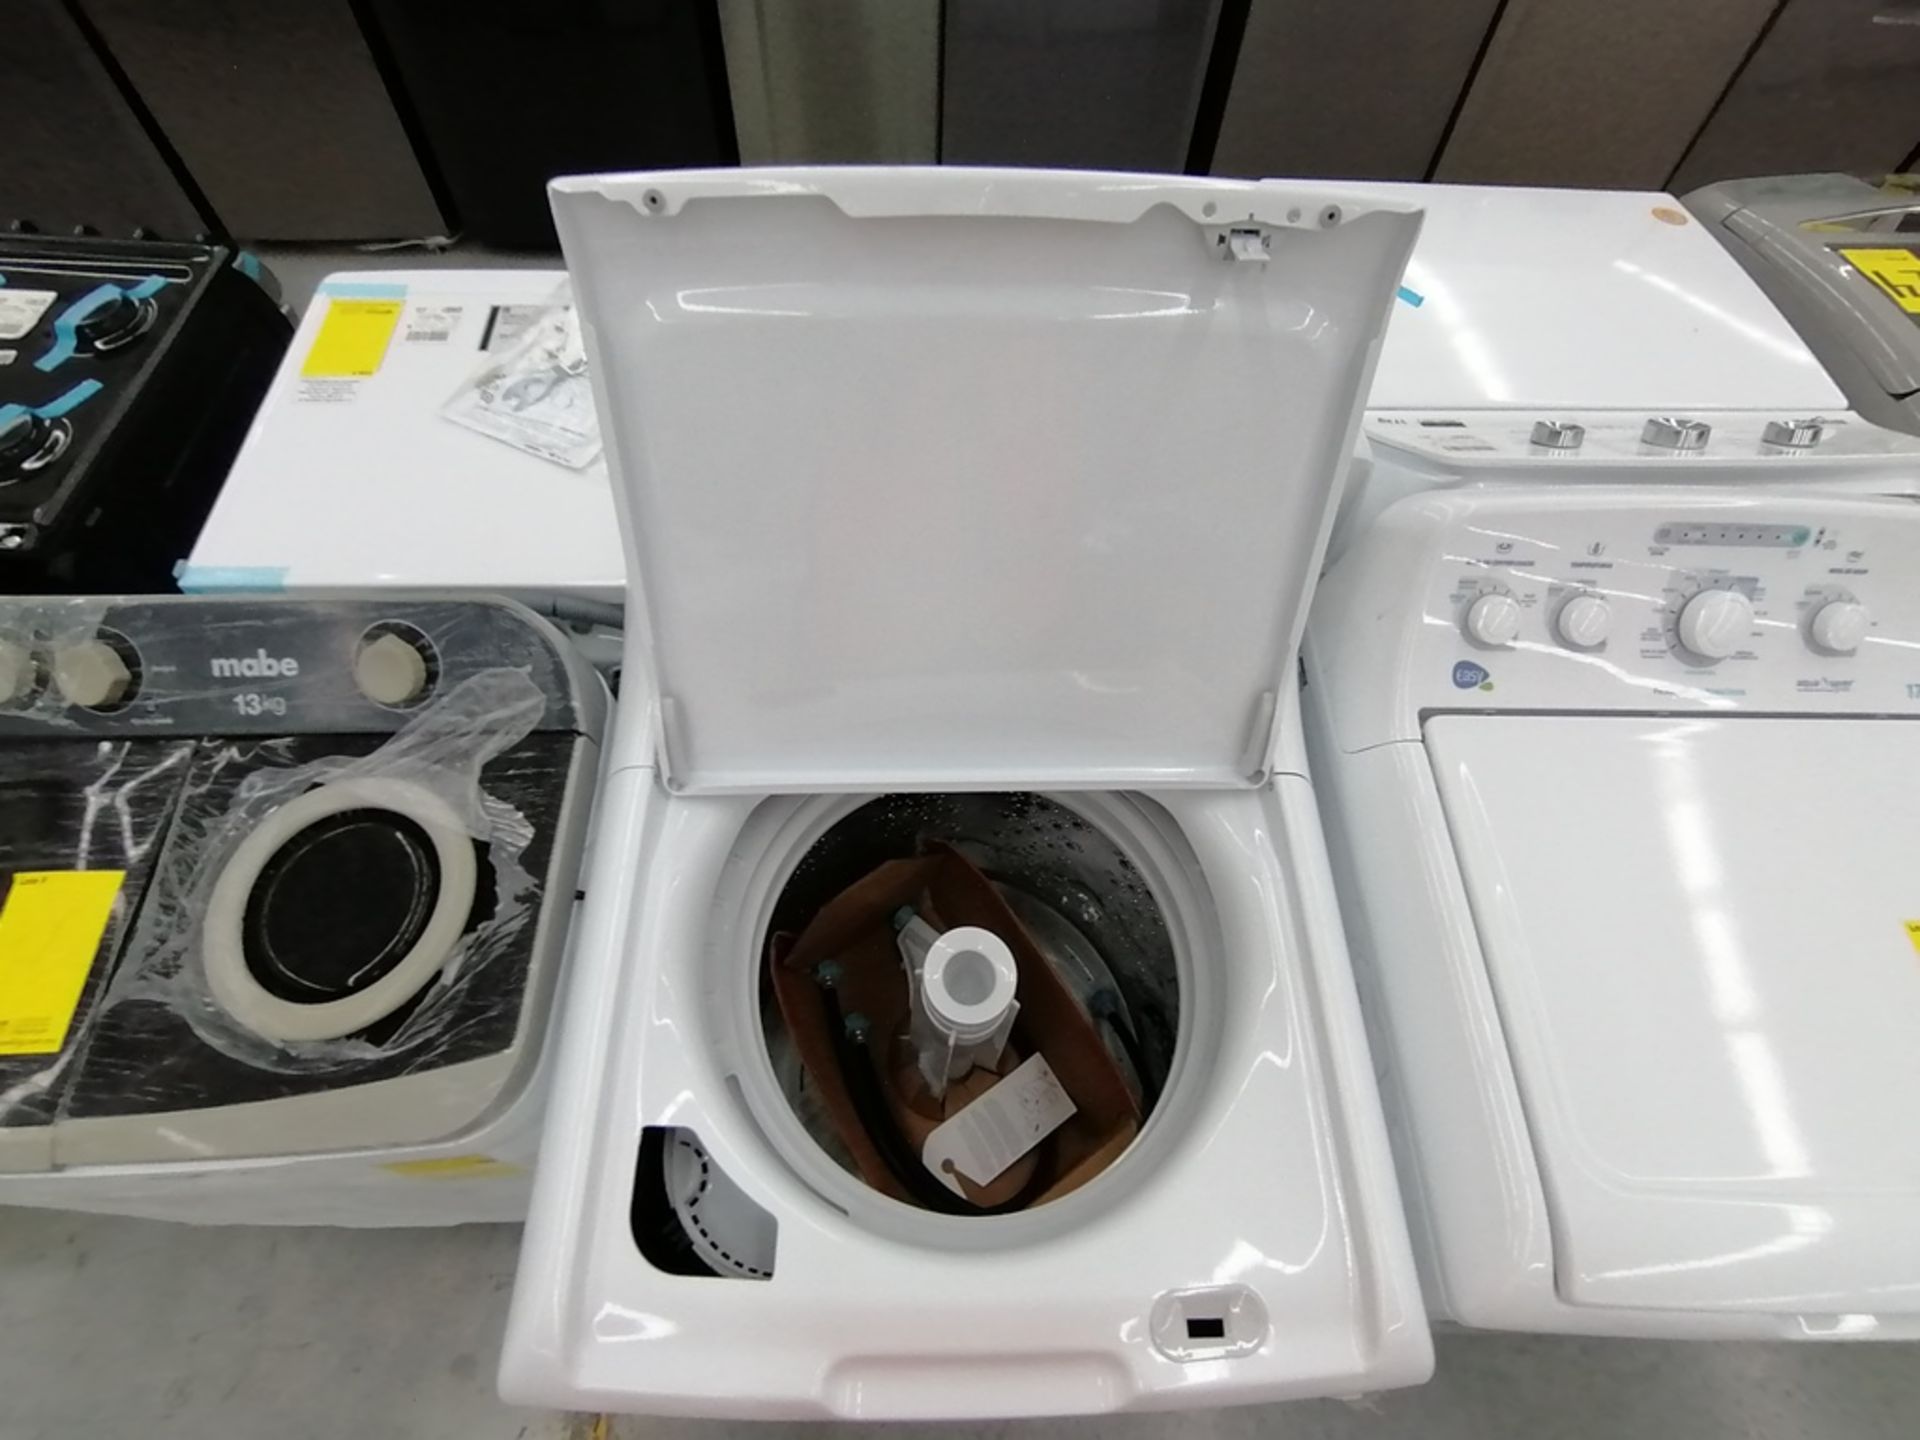 Lote de 3 lavadoras contiene: 1 Lavadora de 17KG, Marca Easy, Modelo LEA77114CBAB03, Serie 2105S522 - Image 29 of 30